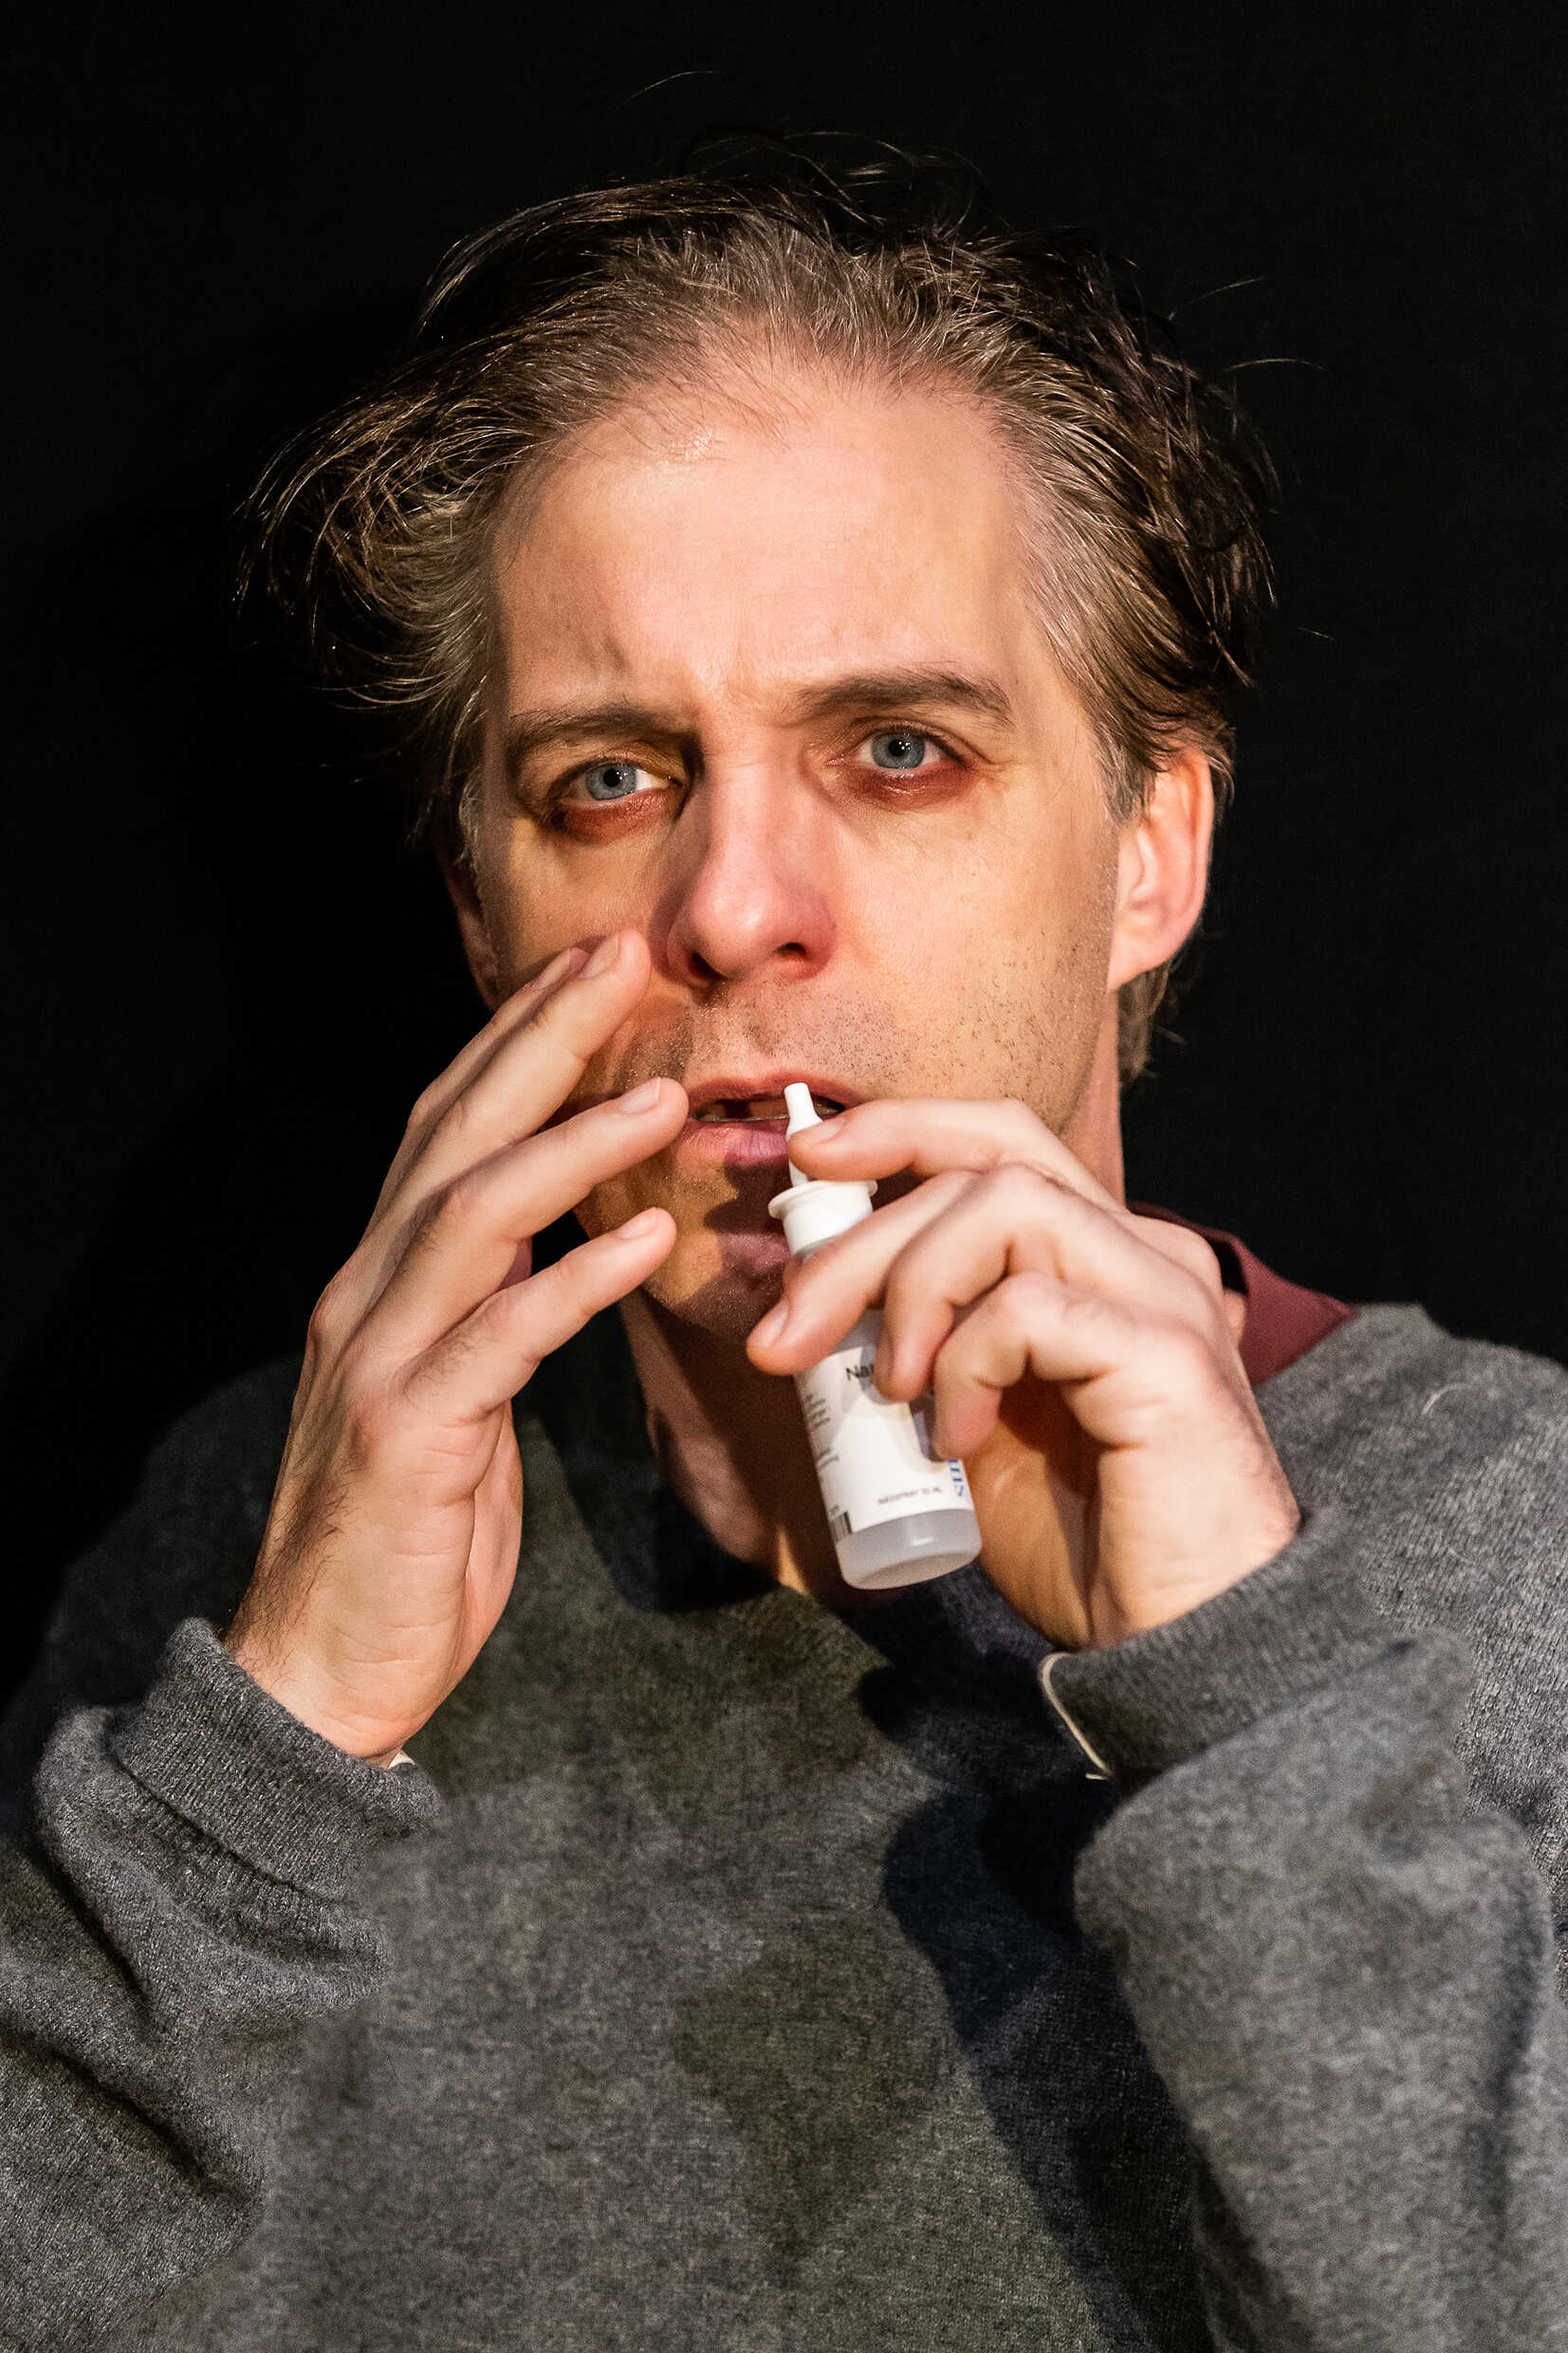 Andreas med en nässpraysflaska. Han spelas av Fredrik Meyer